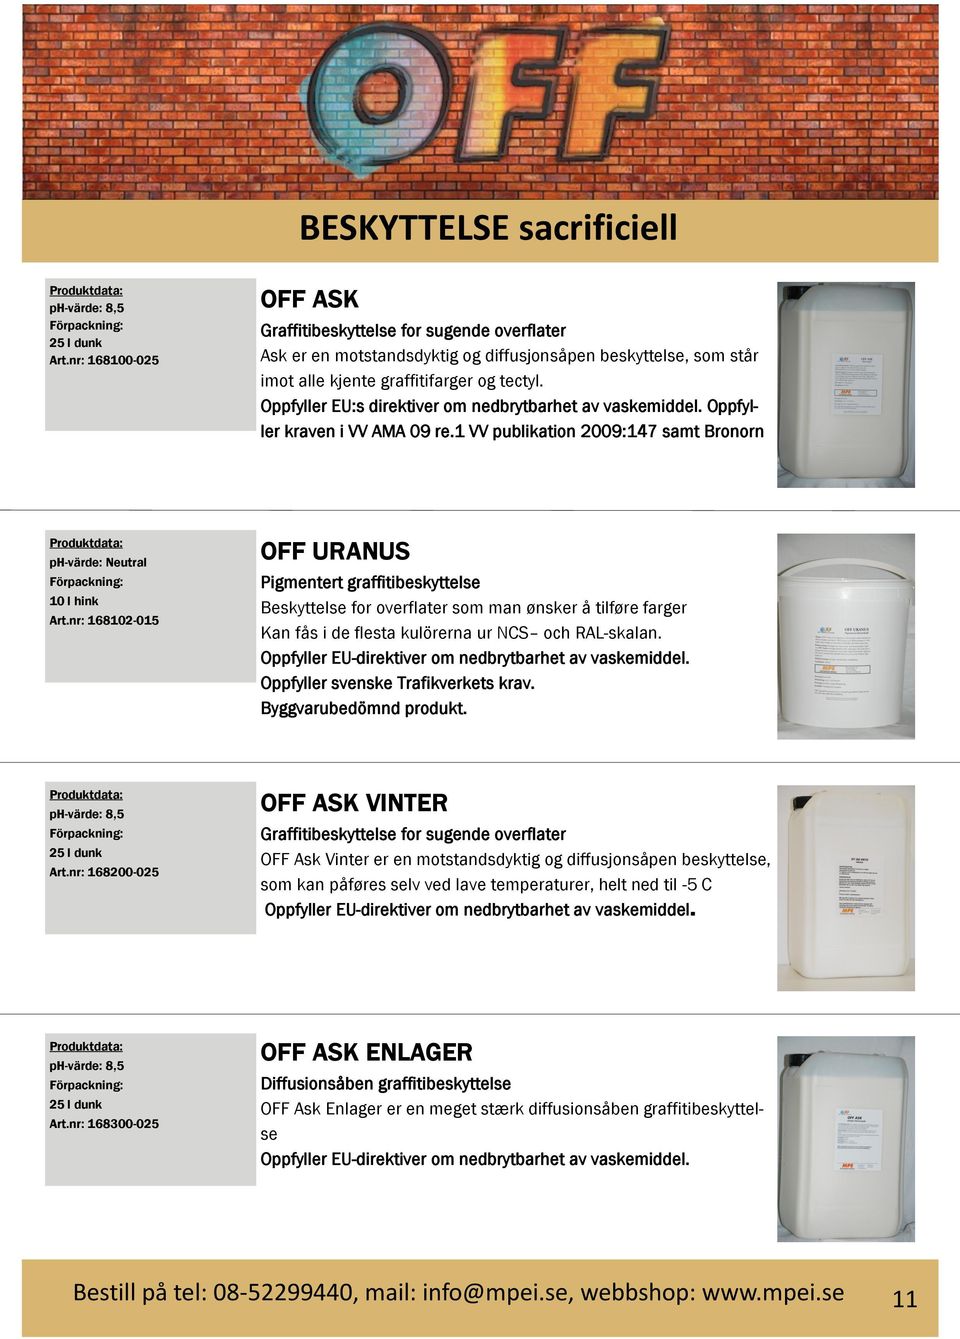 Oppfyller EU:s direktiver om nedbrytbarhet av vaskemiddel. Oppfyller kraven i VV AMA 09 re.1 VV publikation 2009:147 samt Bronorn 10 l hink Art.